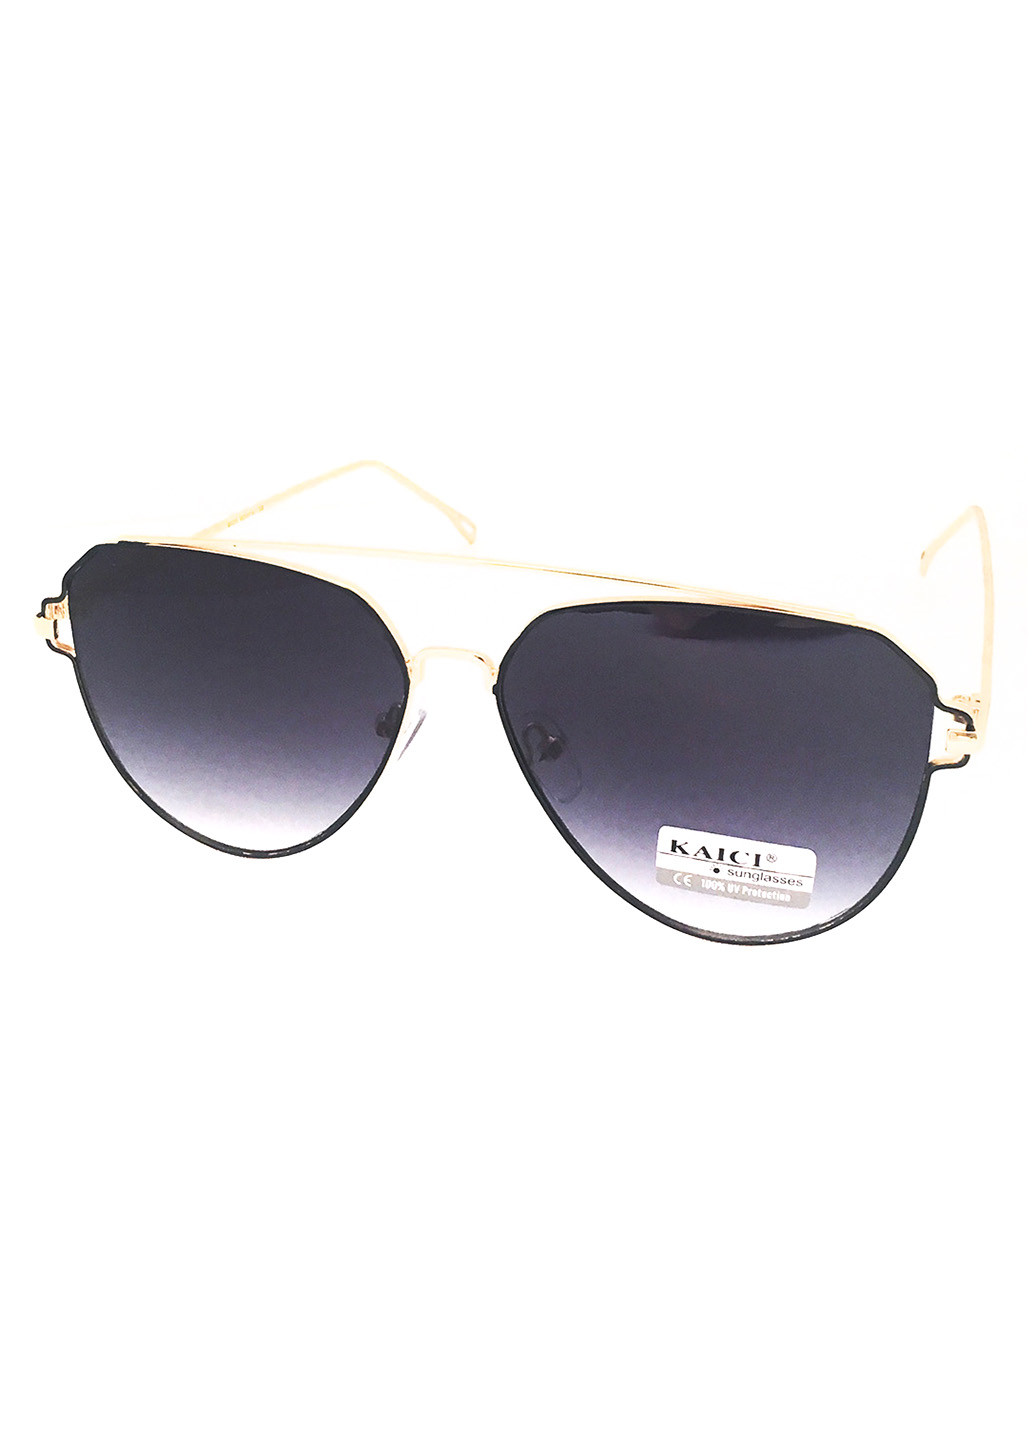 Солнцезащитные очки Fancy Fashion комбинированные